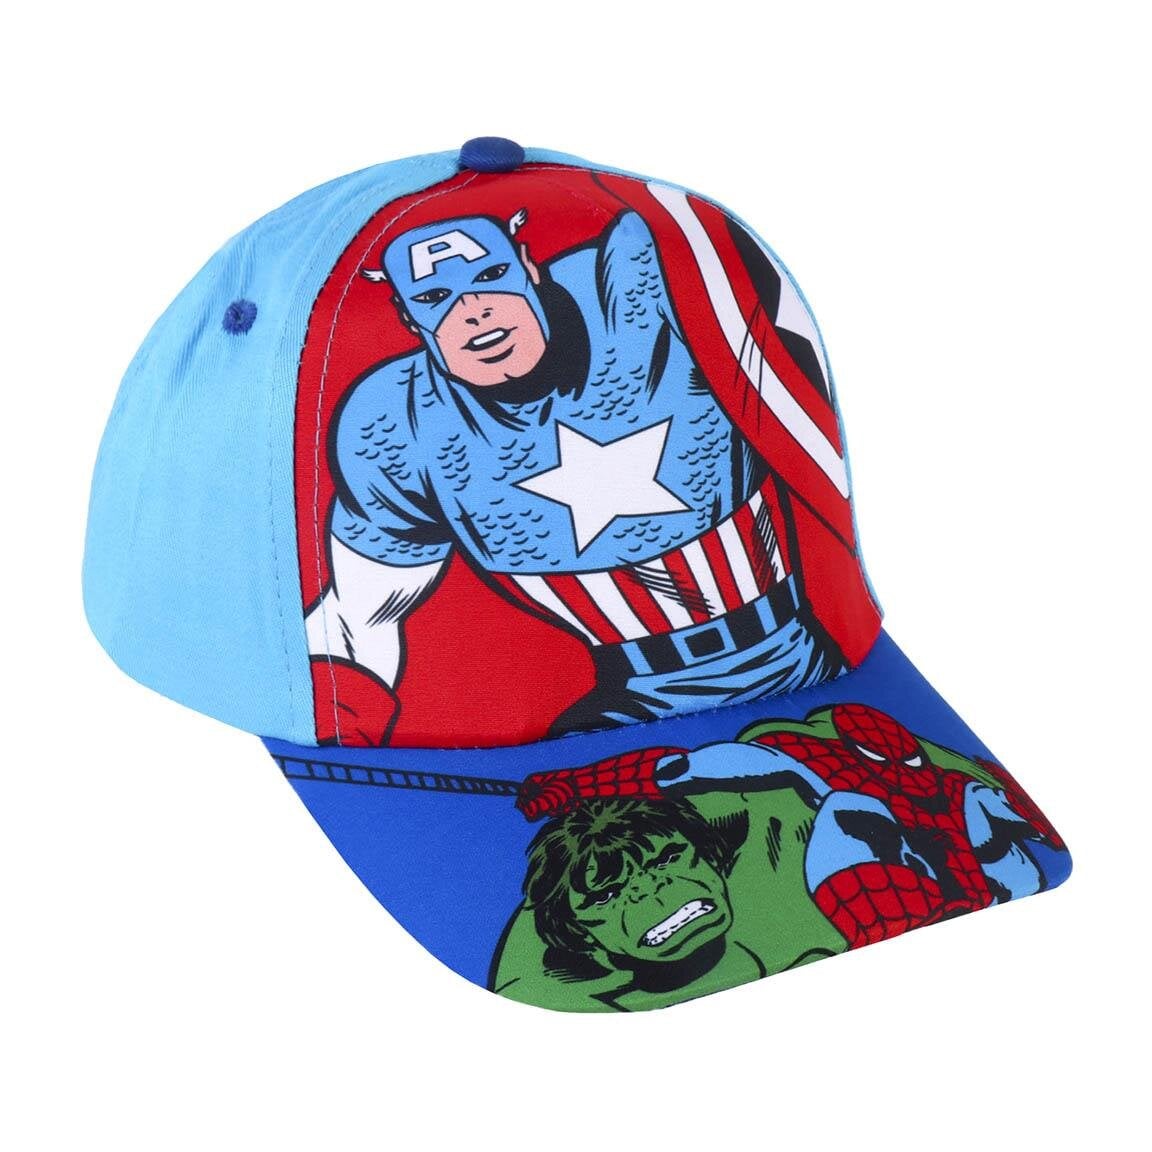 Avengers - Kappe und Sonnenbrille für Kinder